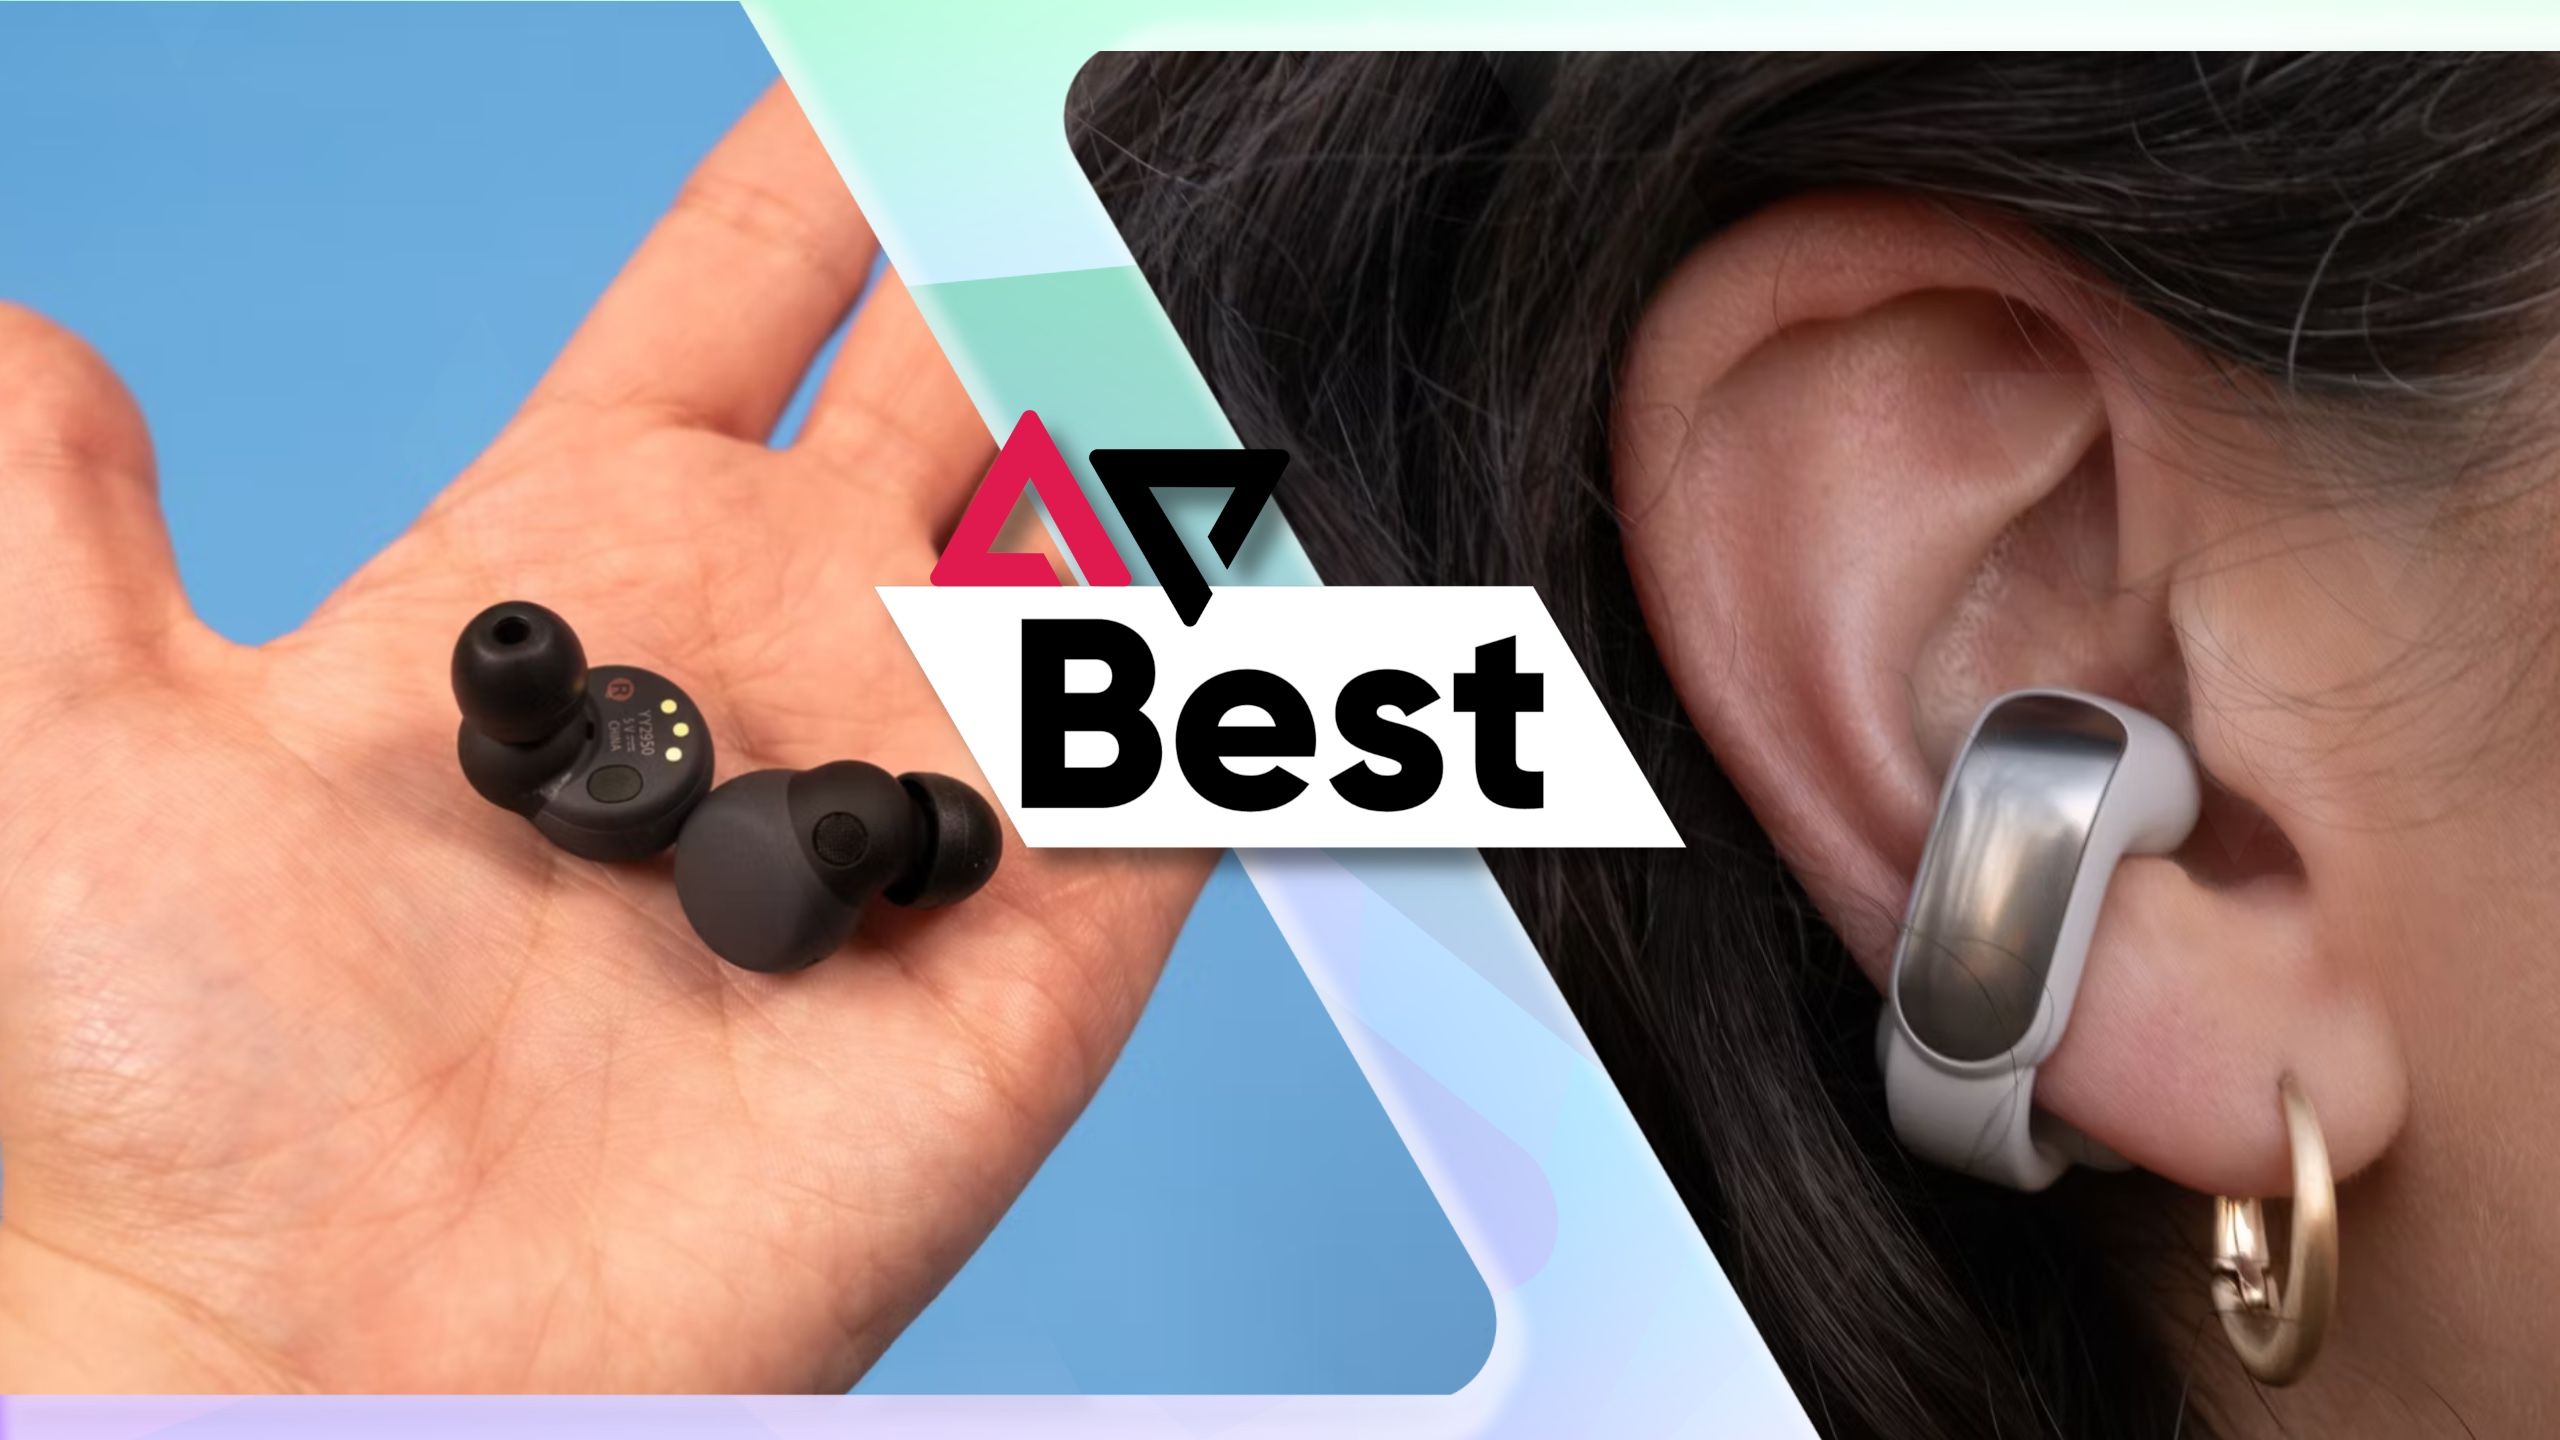 Os melhores fones de ouvido para orelhas pequenas apresentam imagem com Sony LinkBuds S à esquerda e Bose Ultra Open Earbuds no ouvido à direita